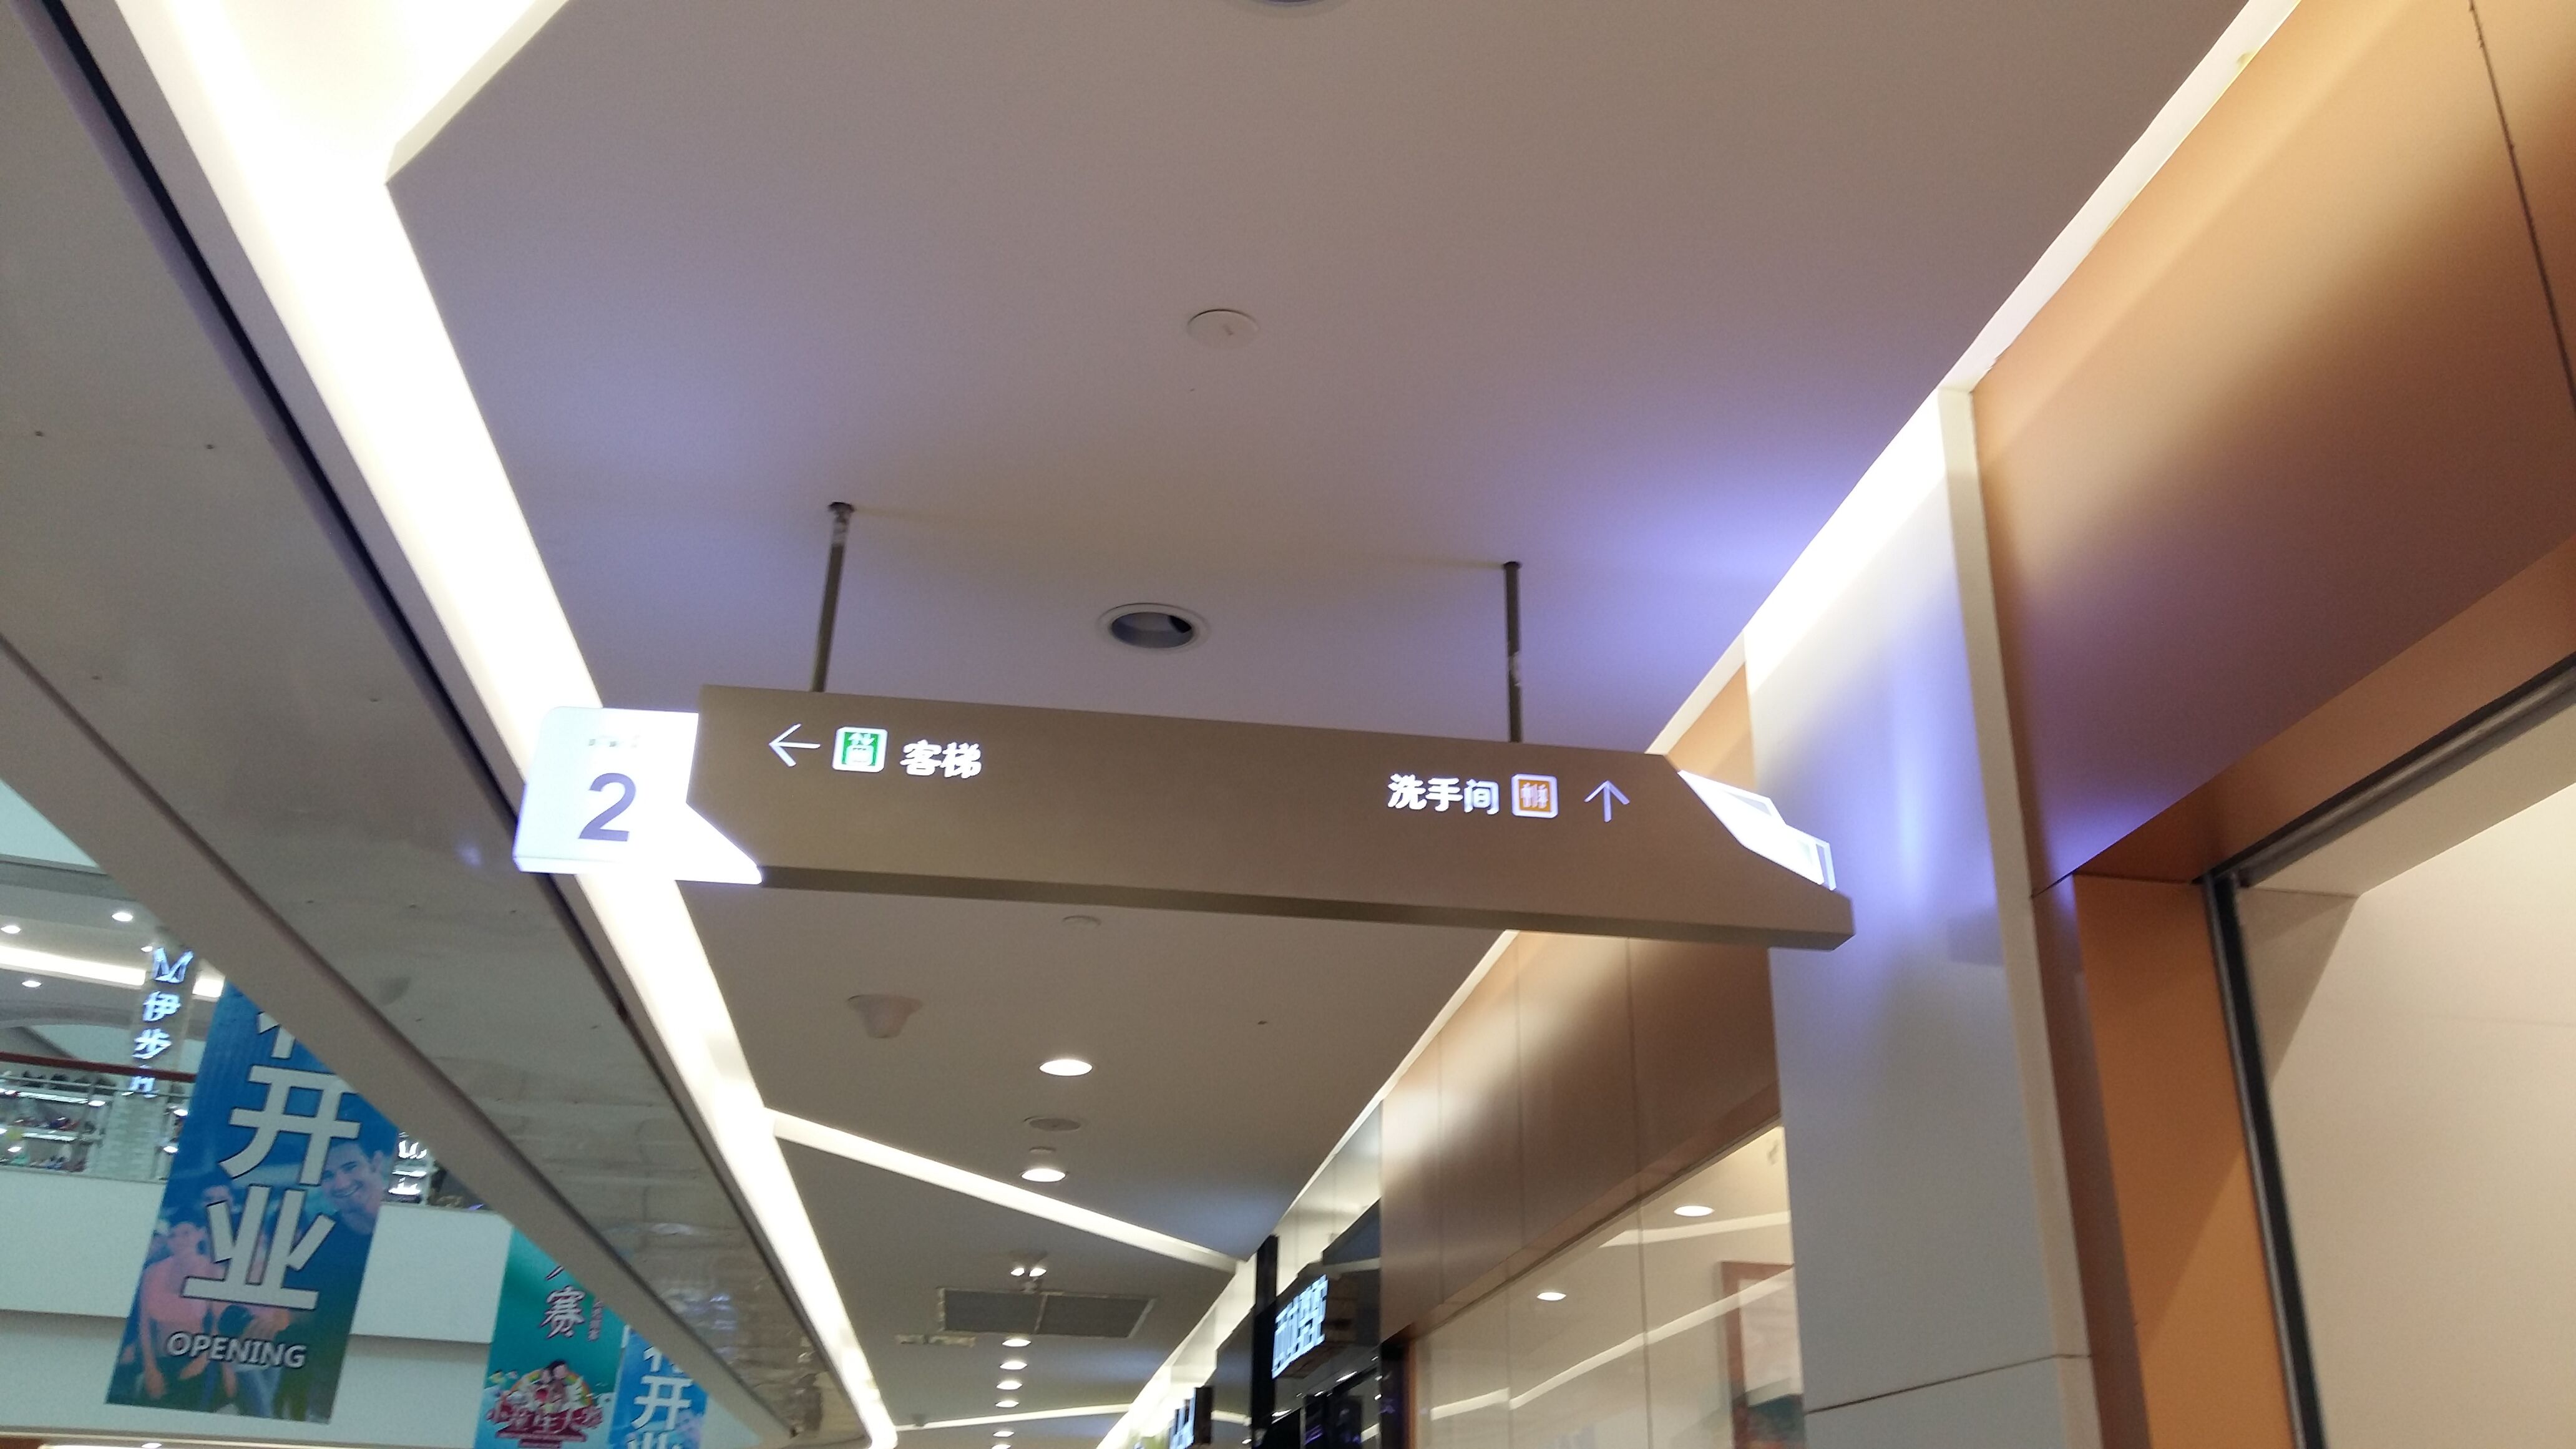 深圳西正分享商业空间导视系统的设置注意事项?